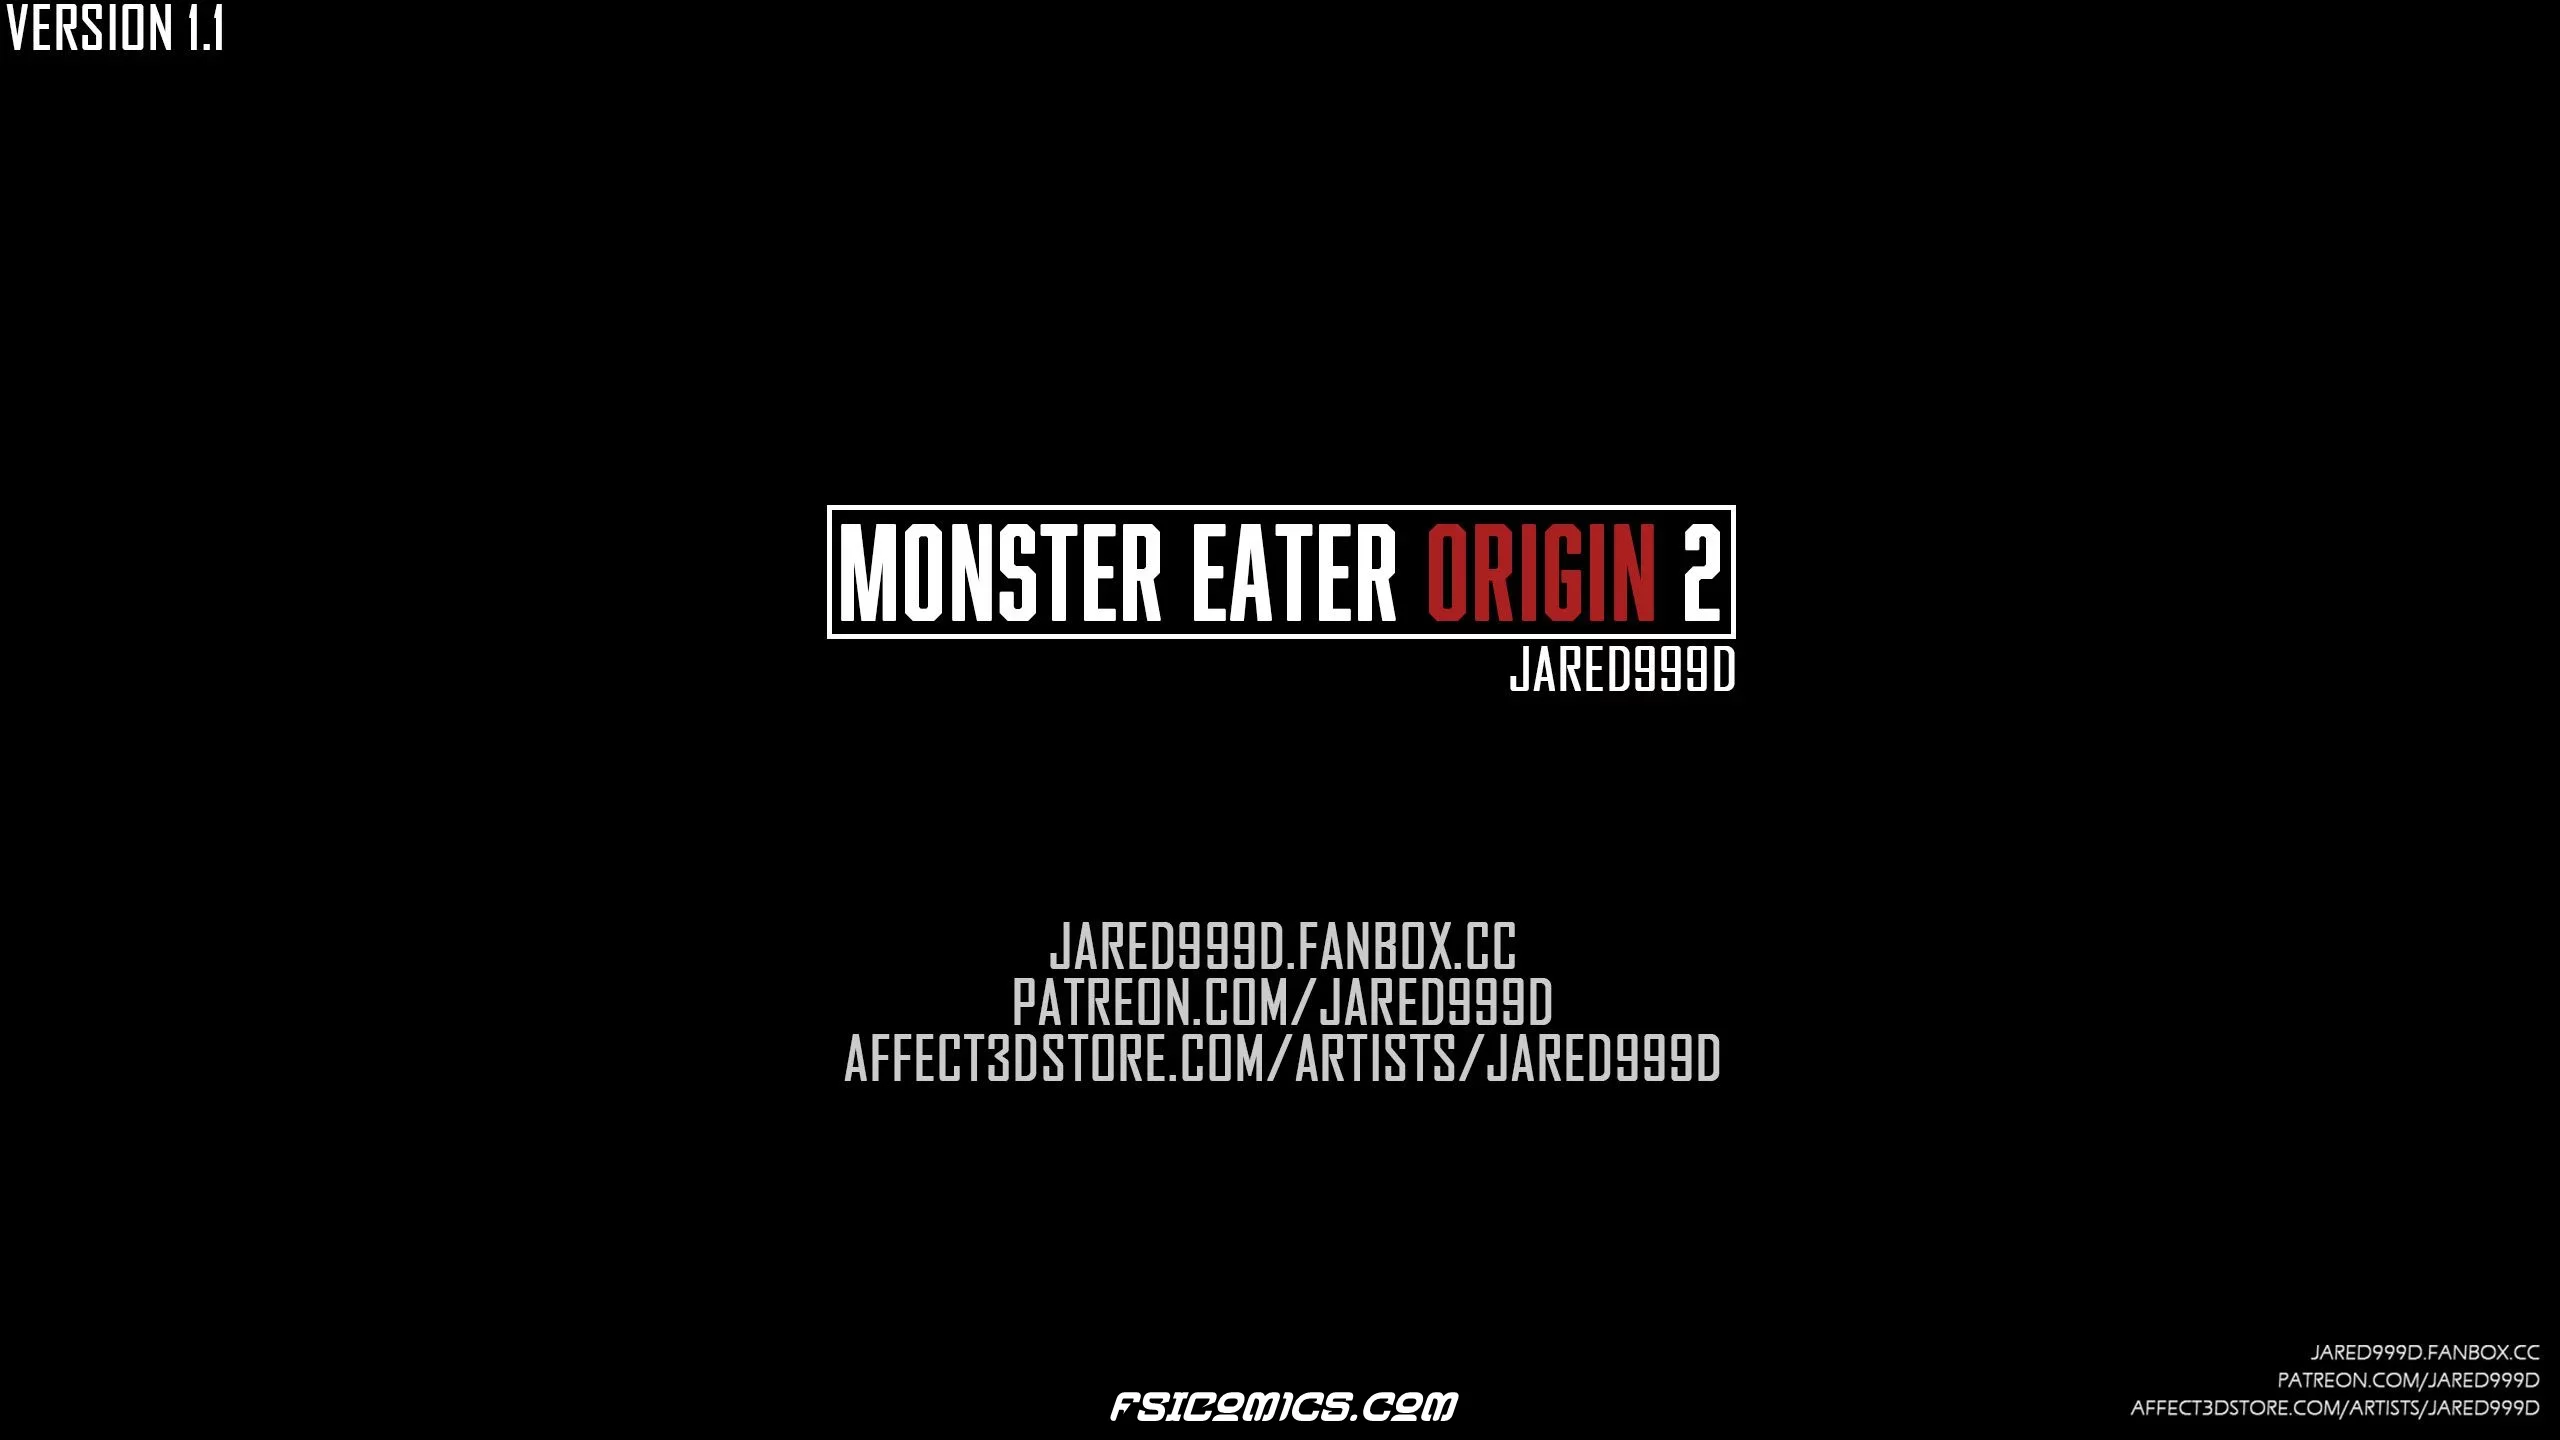 Monster Eater Origins Chapter 2 - Jared999D - 7 - FSIComics